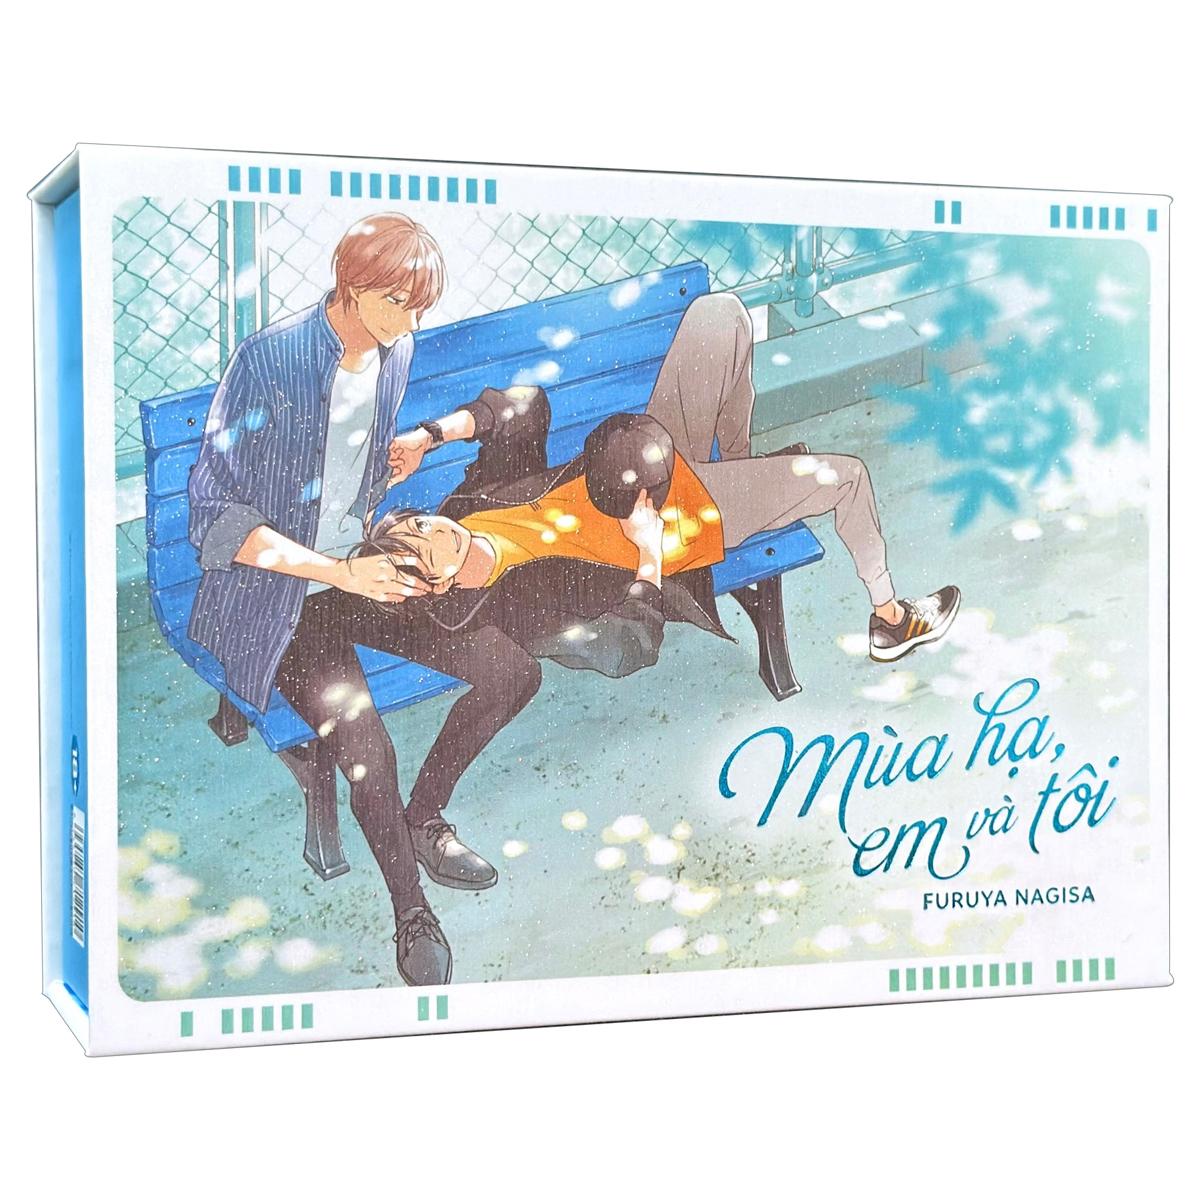 Boxset Mùa Hạ, Em Và Tôi (Bộ 3 Cuốn) - Bản Sưu Tầm - Tặng Kèm 3 Card Ivory + 4 Booklet Ngoại Truyện + 1 Shikishi